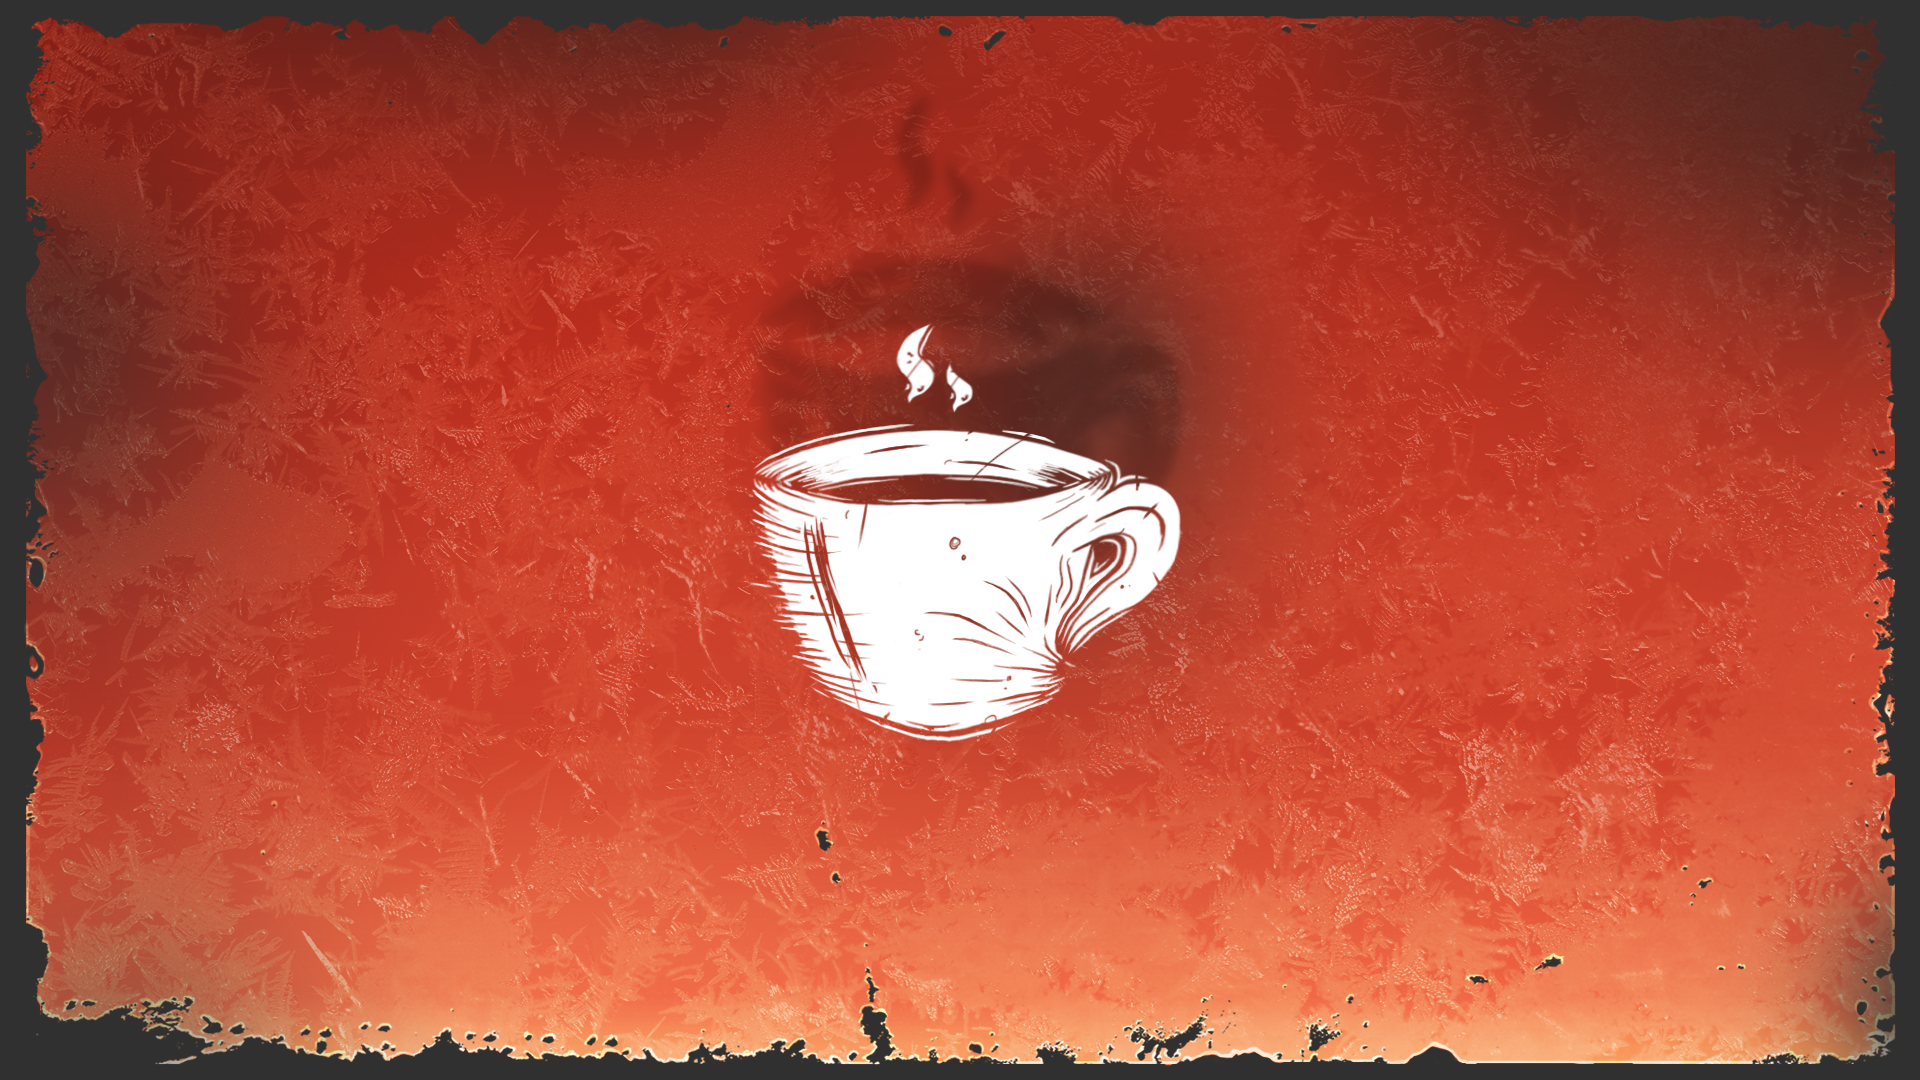 Icon for Espresso